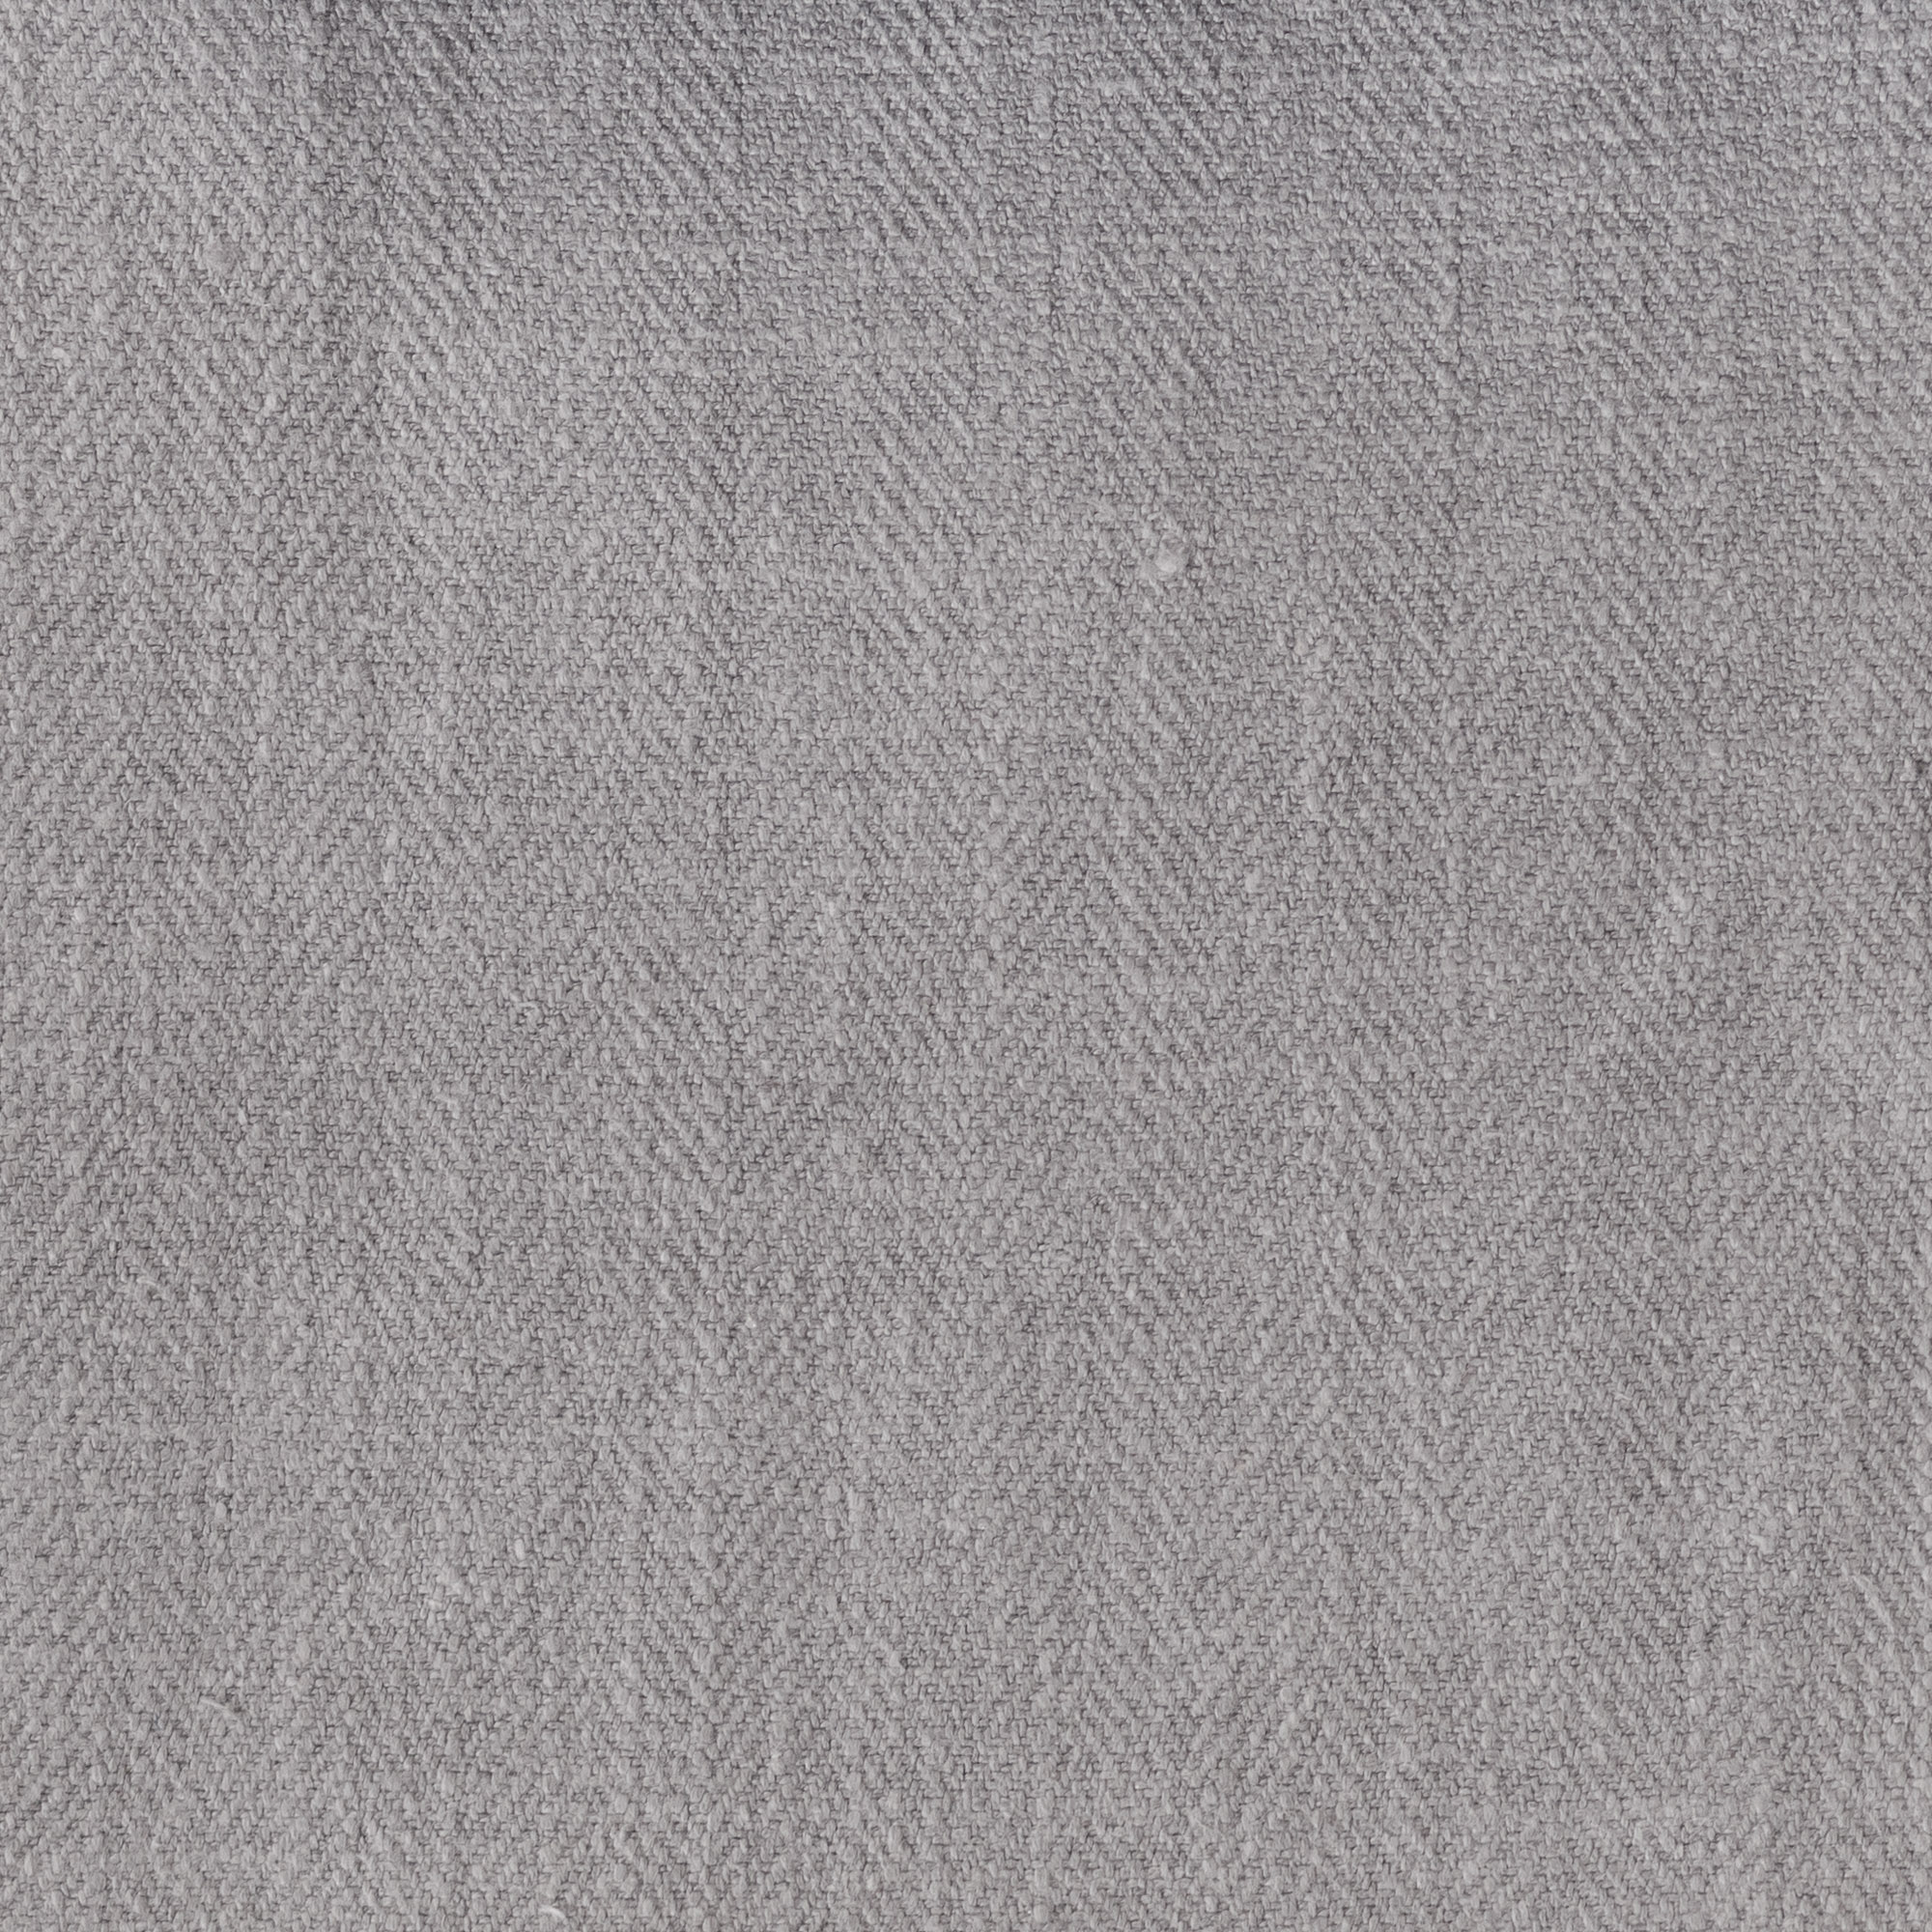 Gir Ash Cotton Linen Blend  Fabric Swatch 6" x 6"